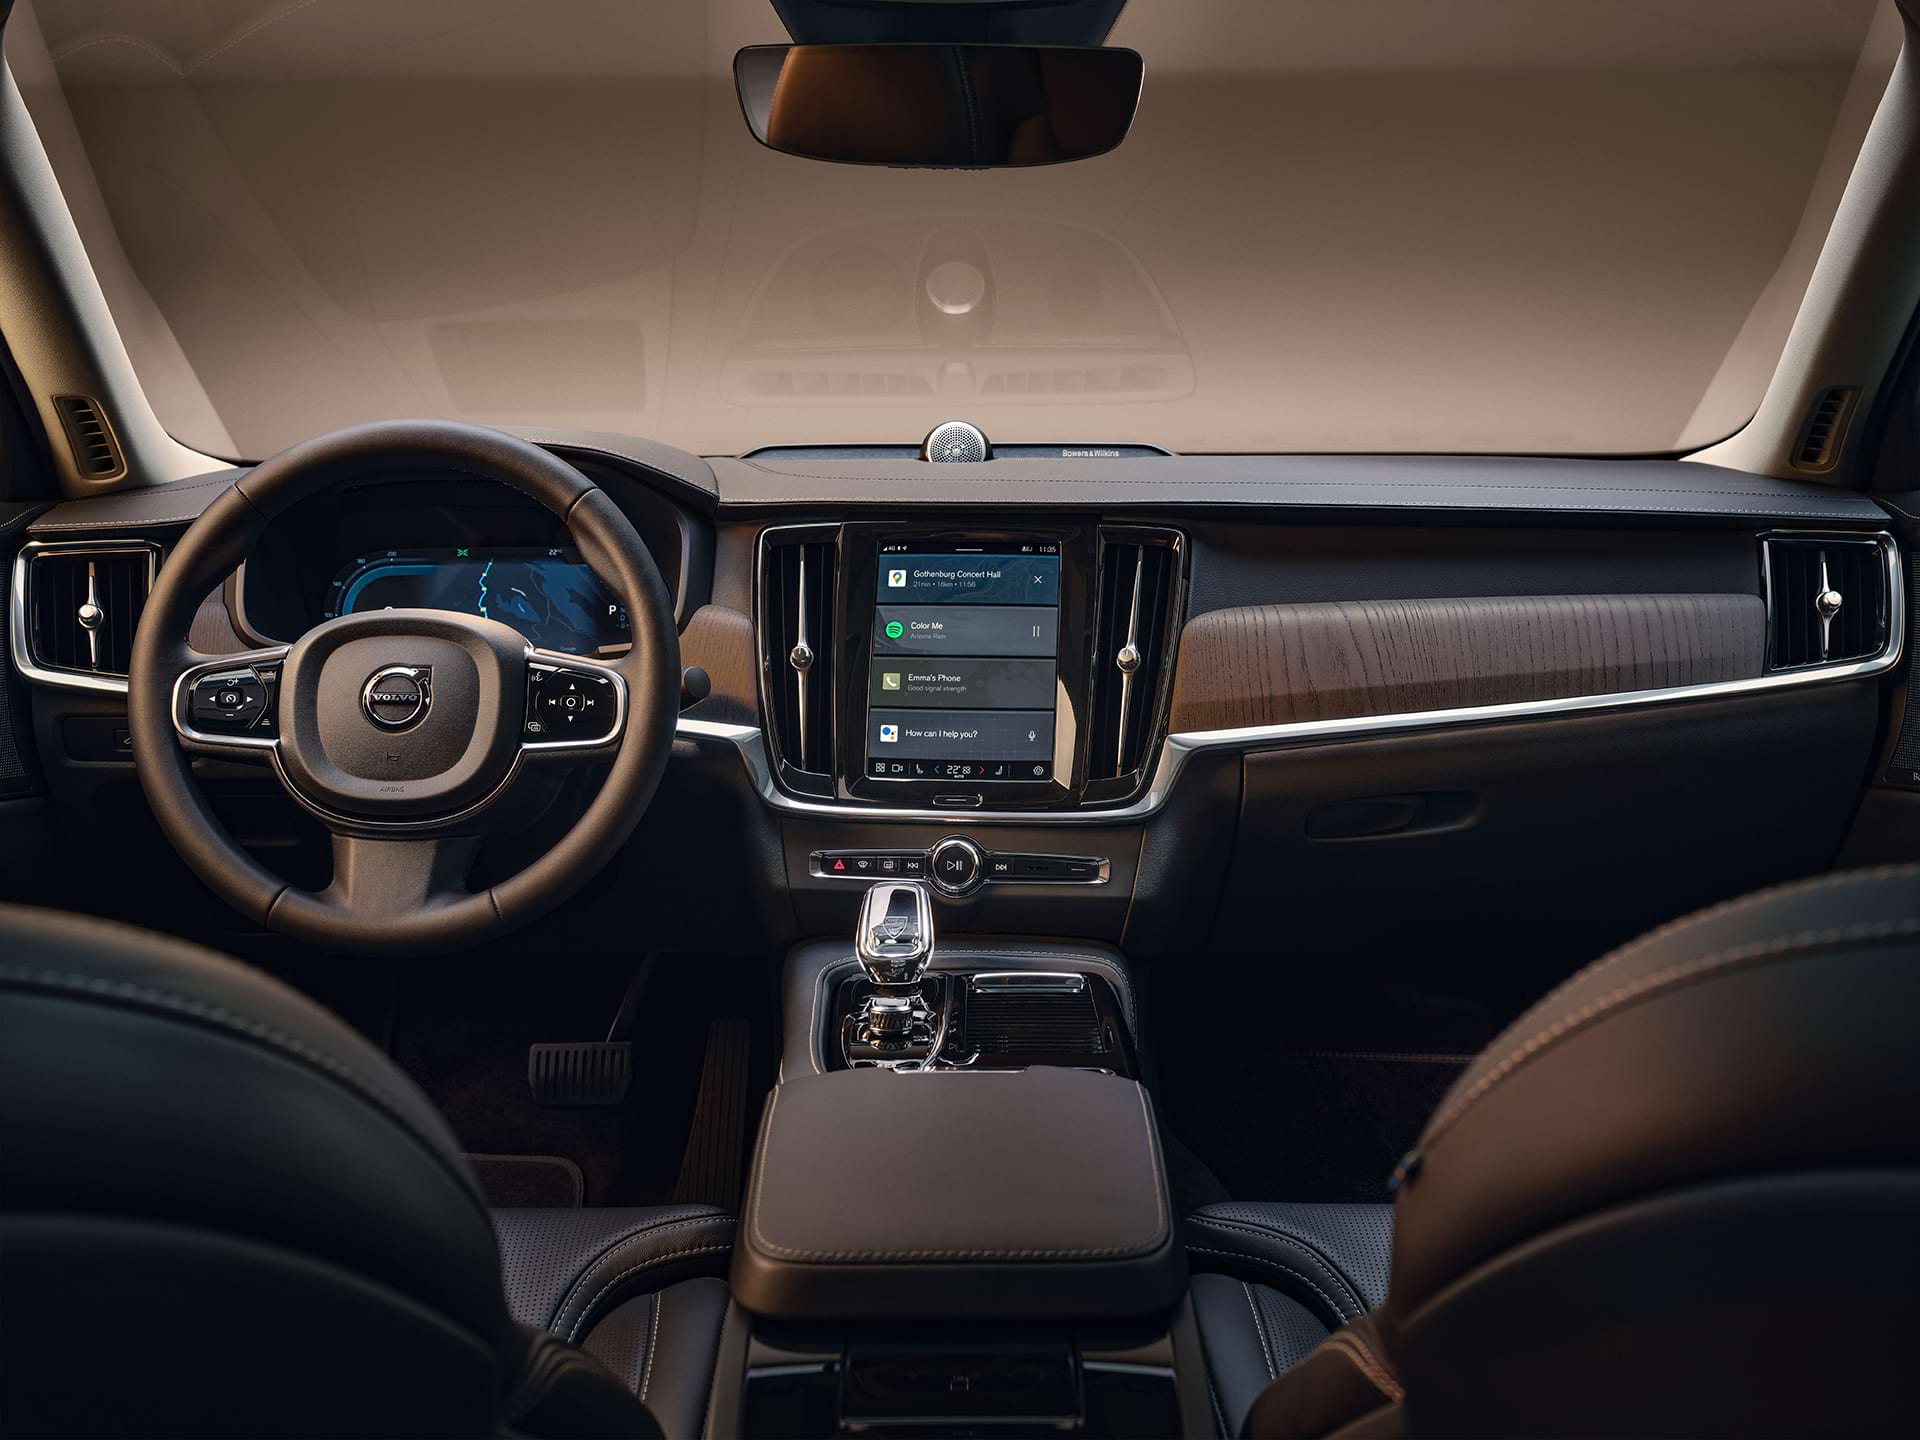 Kontrolna tabla, centralni displej, menjač, ekran vozača i volan Volvo limuzine.